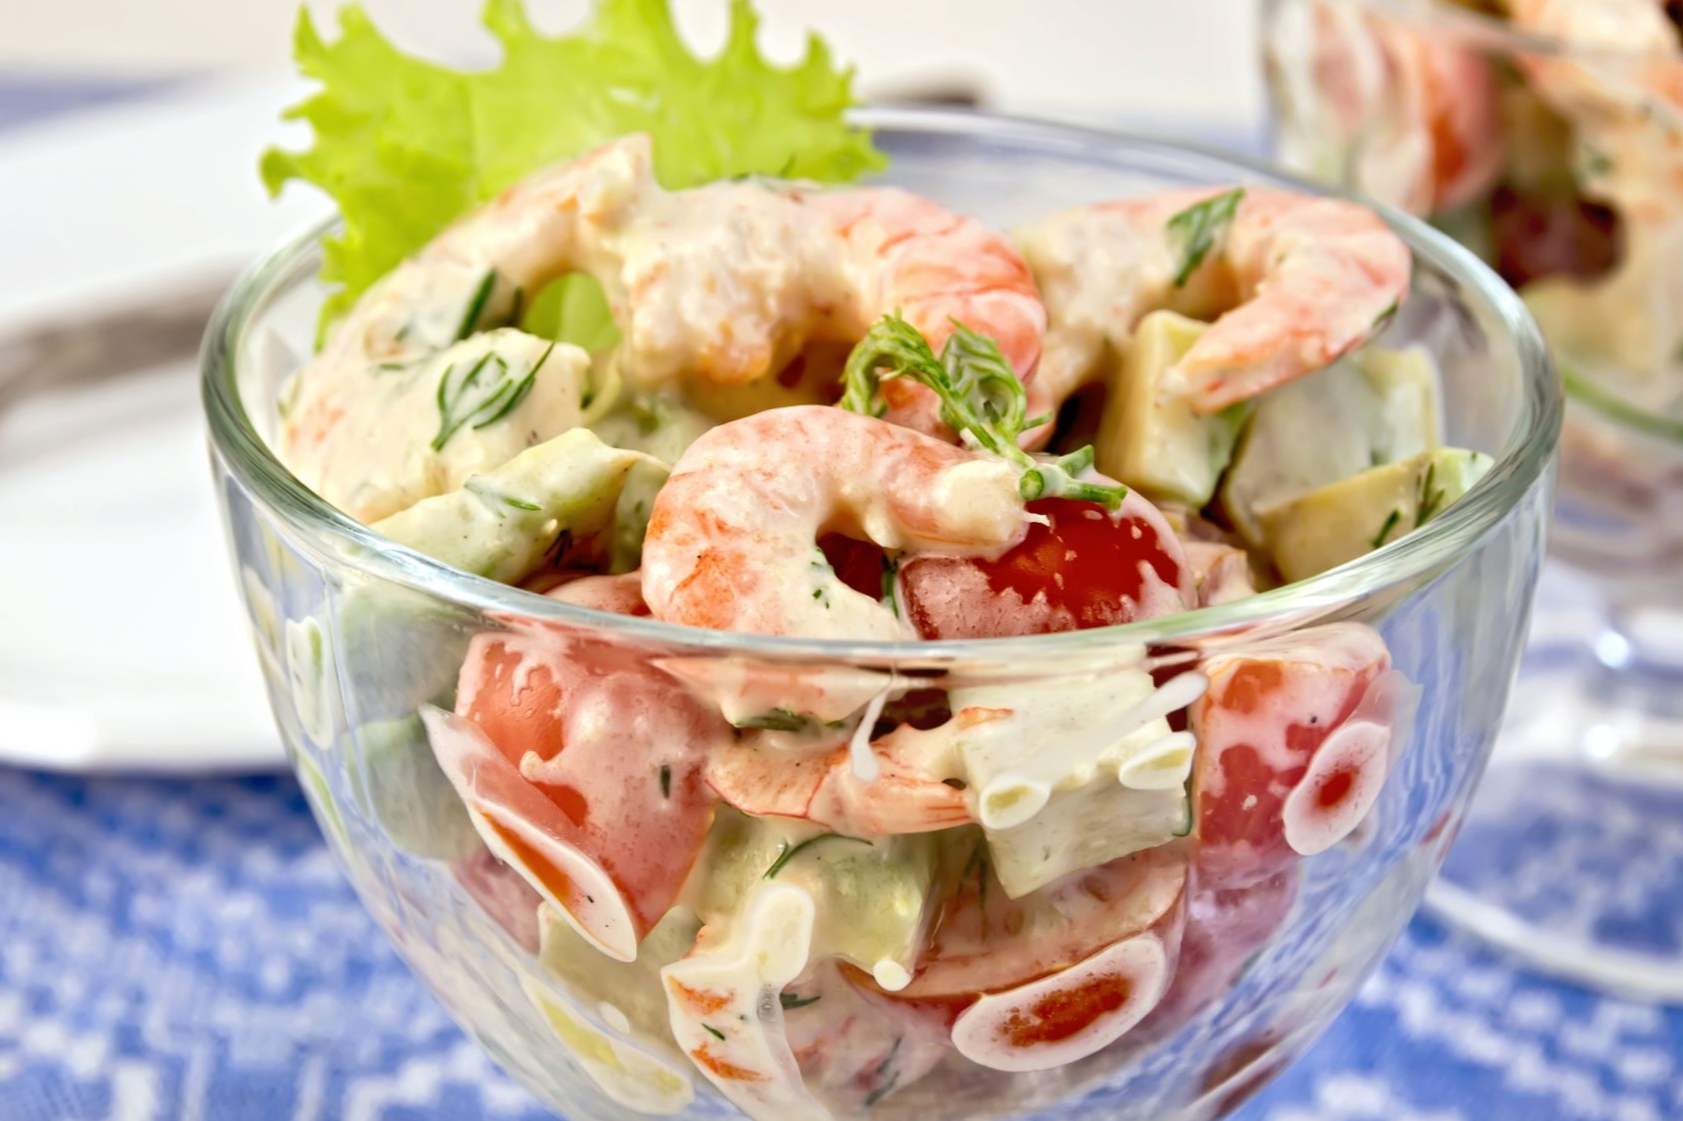 Salata s kozicama i rajčicama - 8 ukusnih recepata